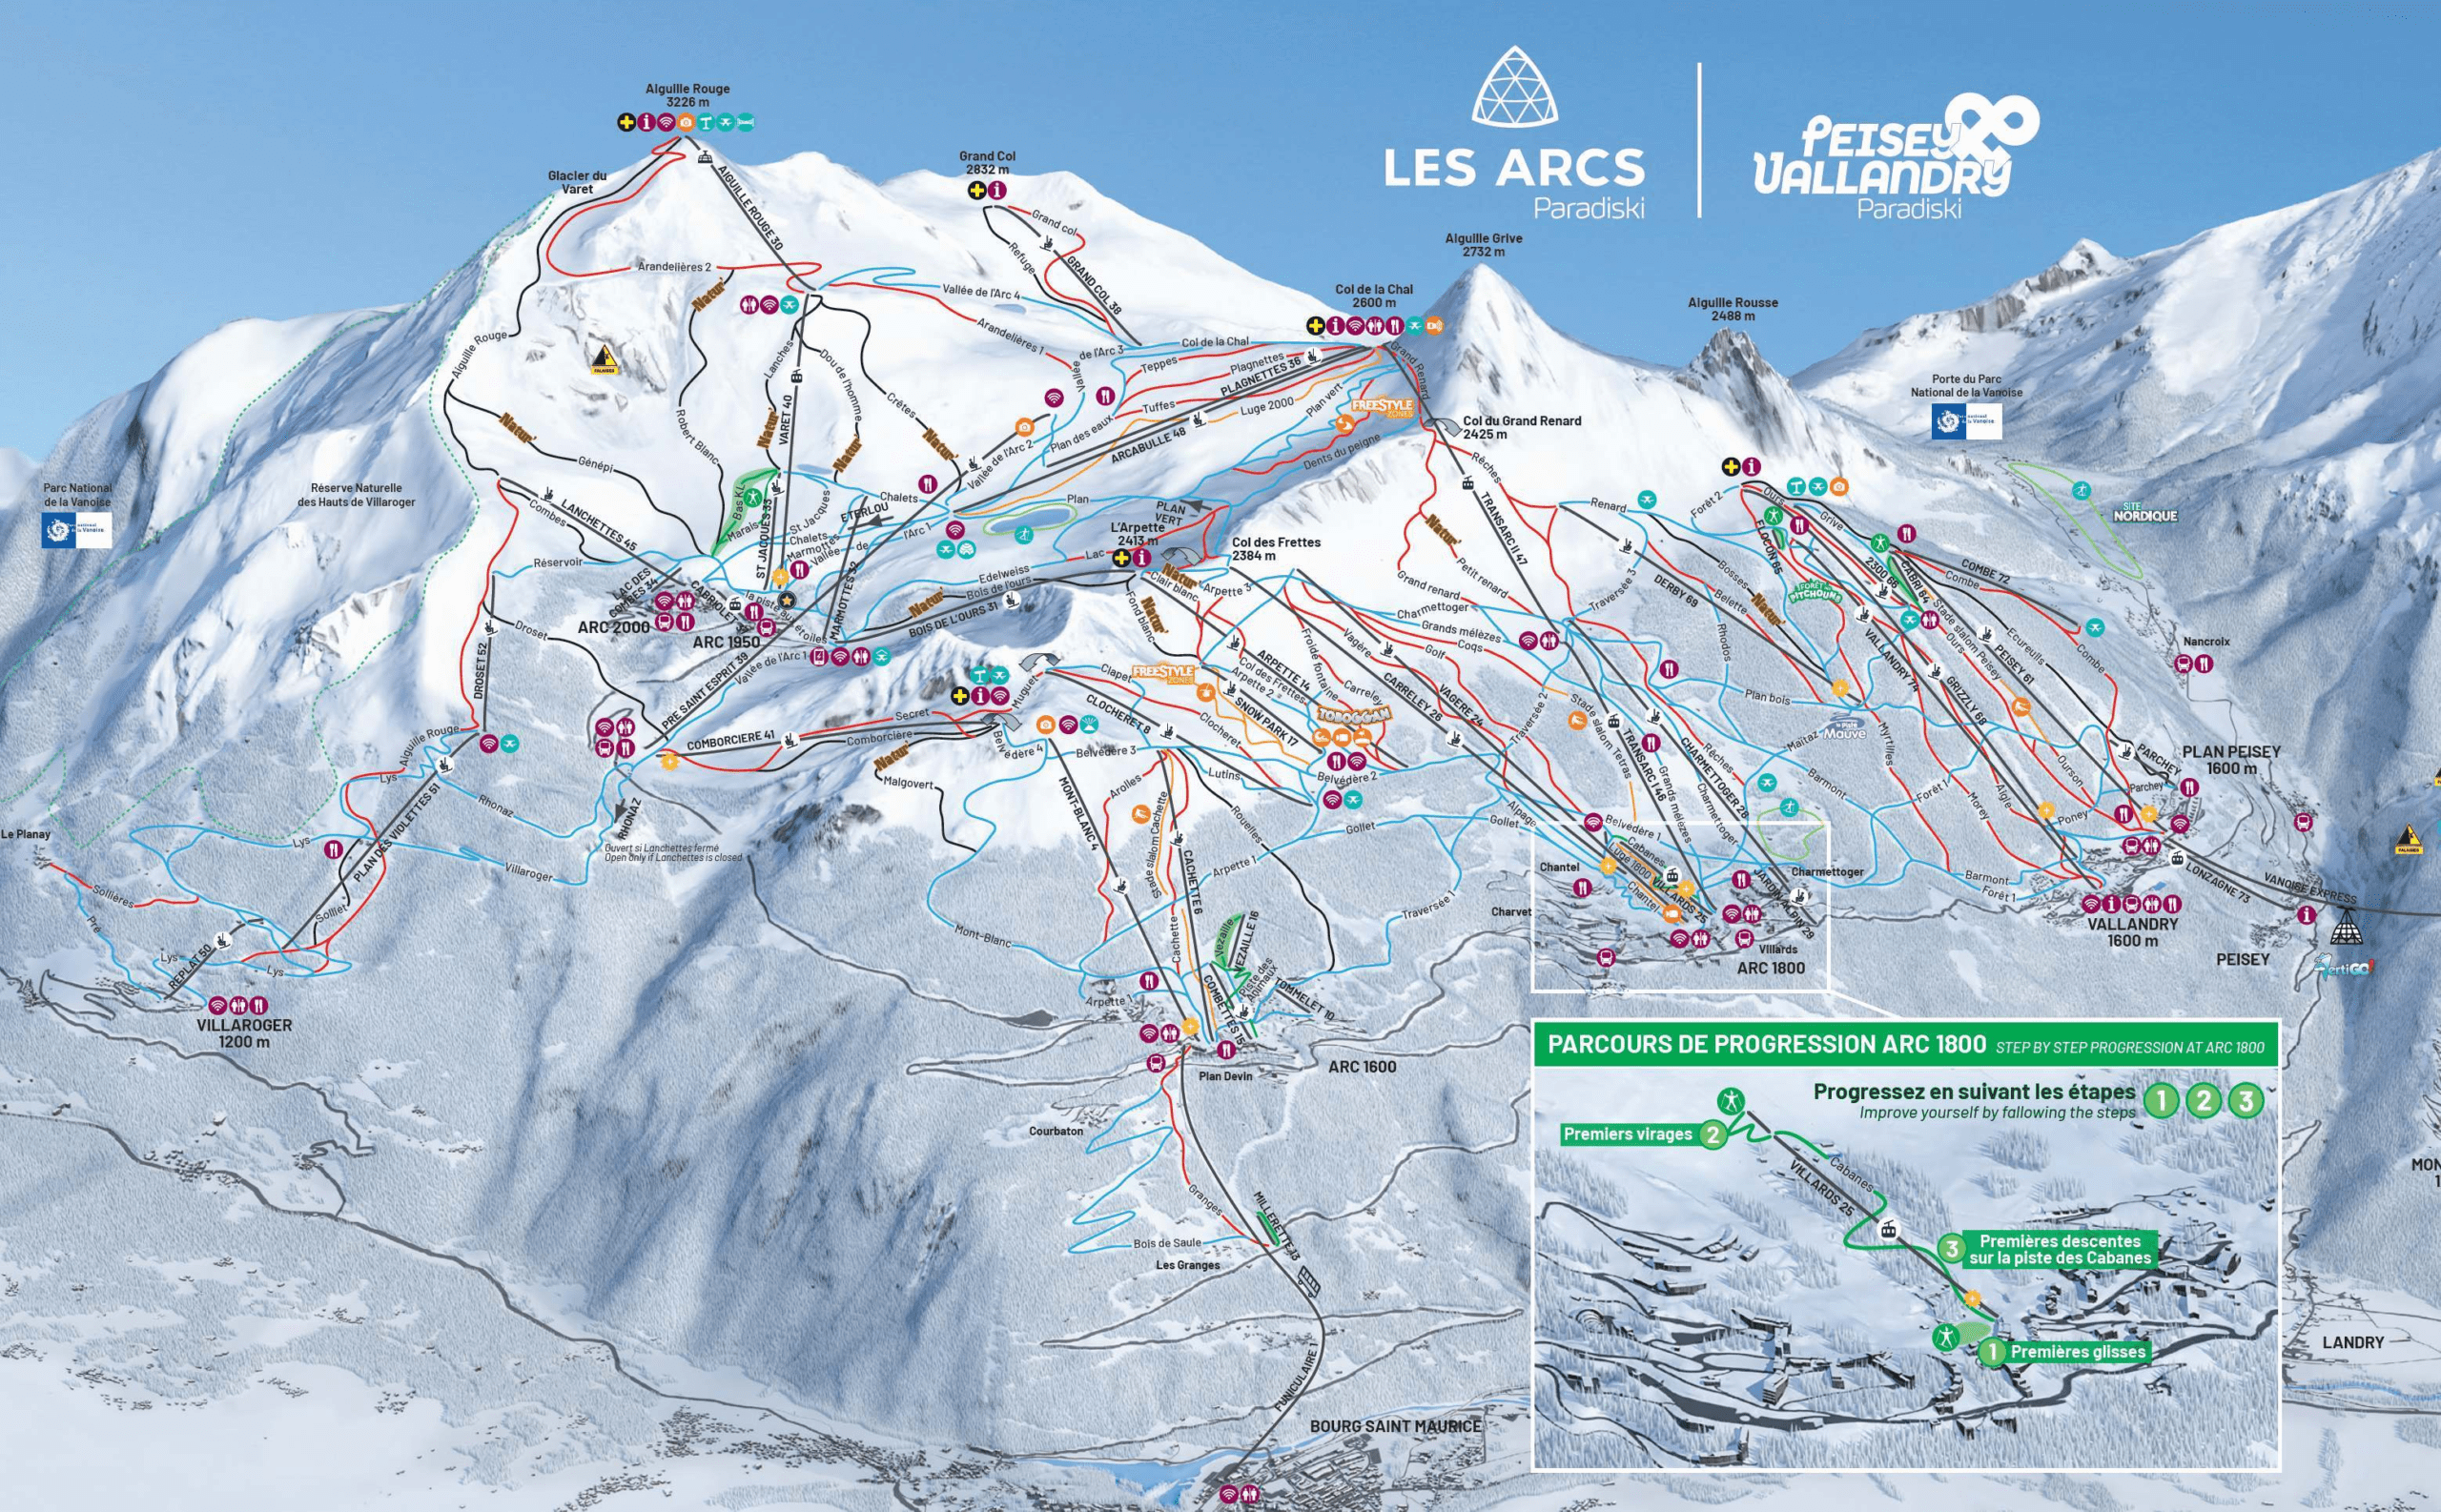 Les Arcs ski resort - Paradiski ski area - Ski-in Ski-out